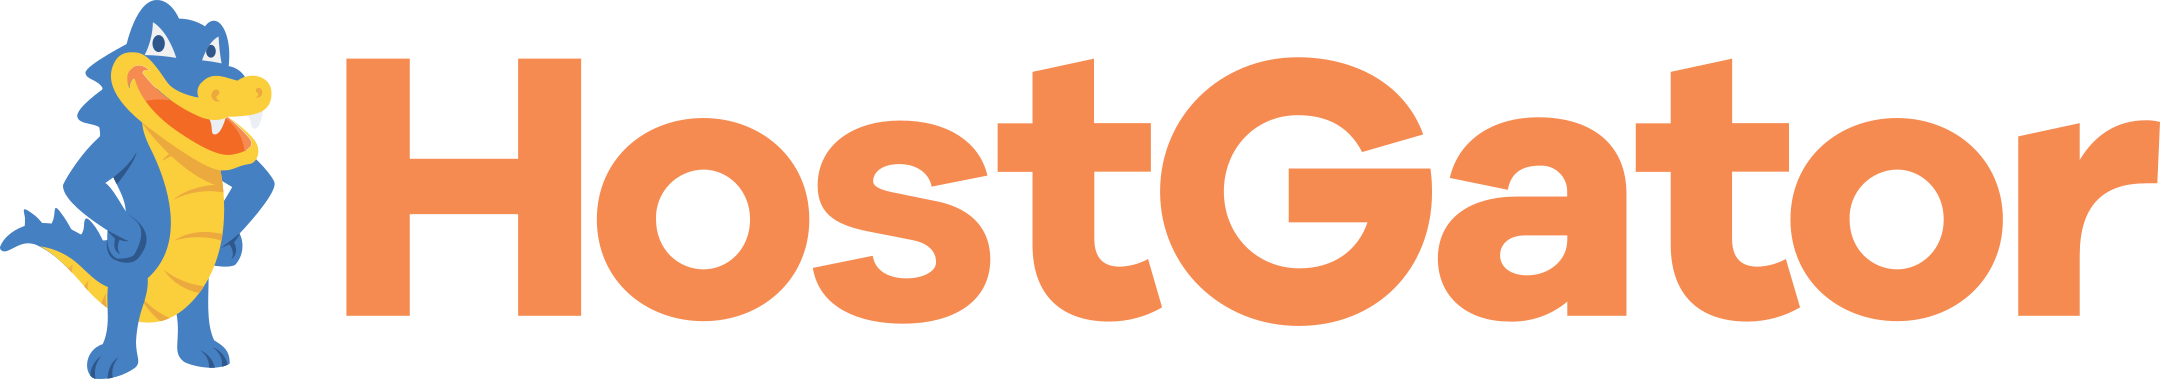 HostGator Logo.